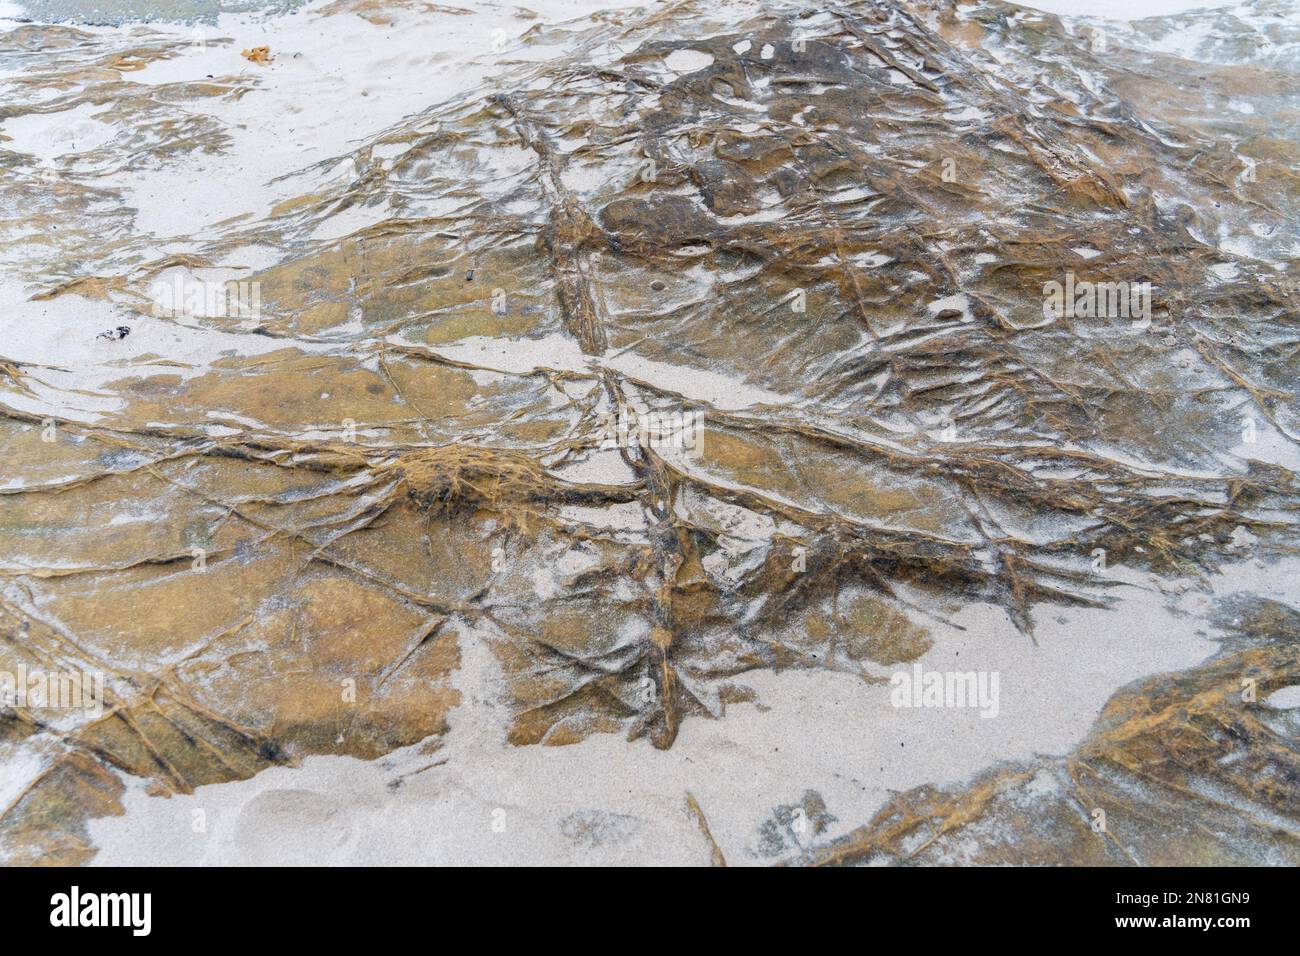 Vene minerali baritiche nelle rocce di arenaria sulla spiaggia di Cullercoats Bay, vicino a Tynemouth, Regno Unito Foto Stock